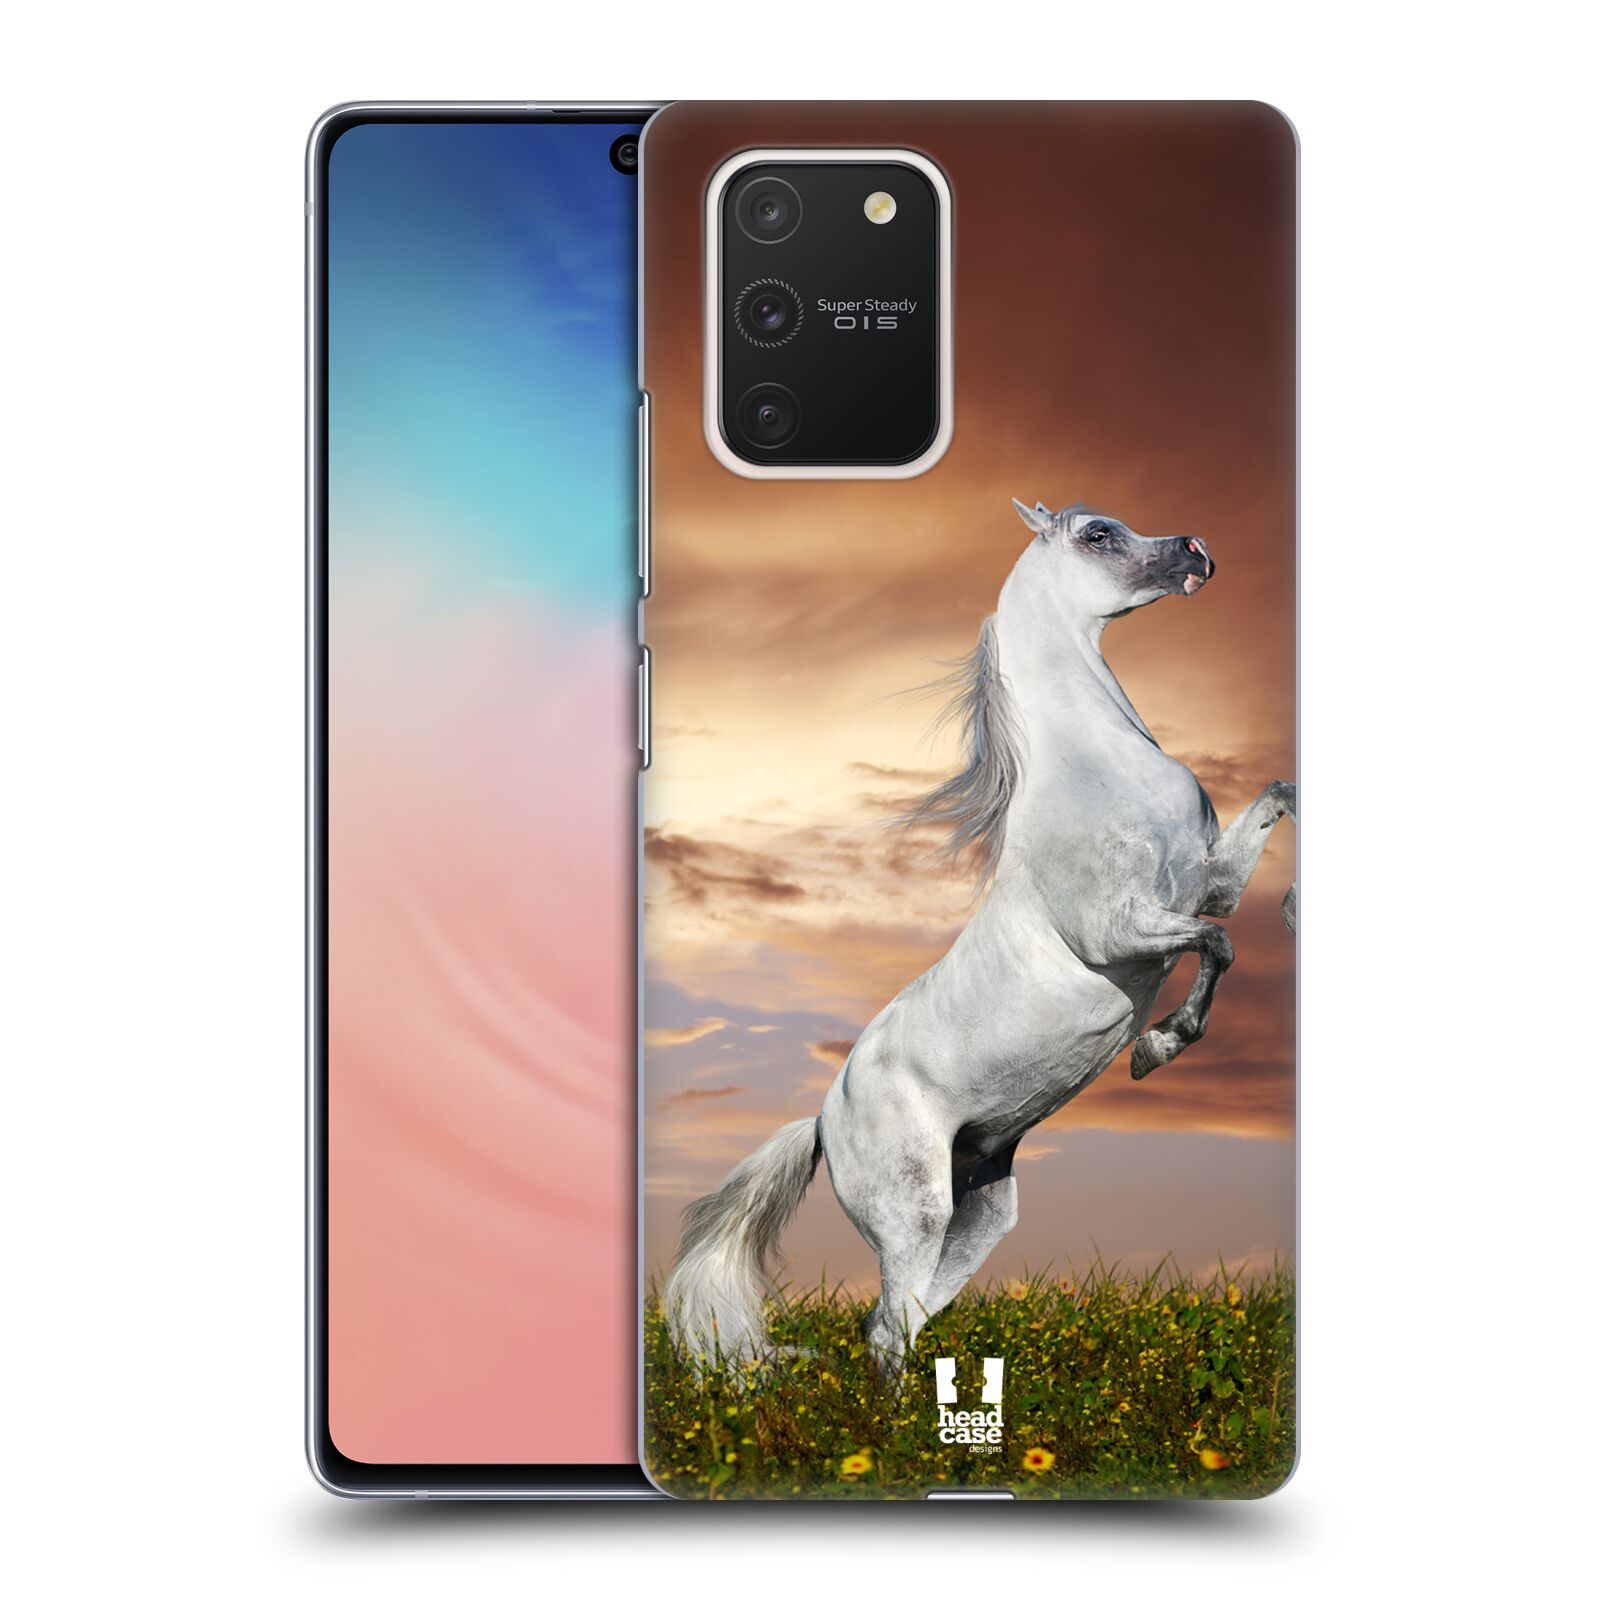 Zadní obal pro mobil Samsung Galaxy S10 LITE - HEAD CASE - Svět zvířat divoký kůň